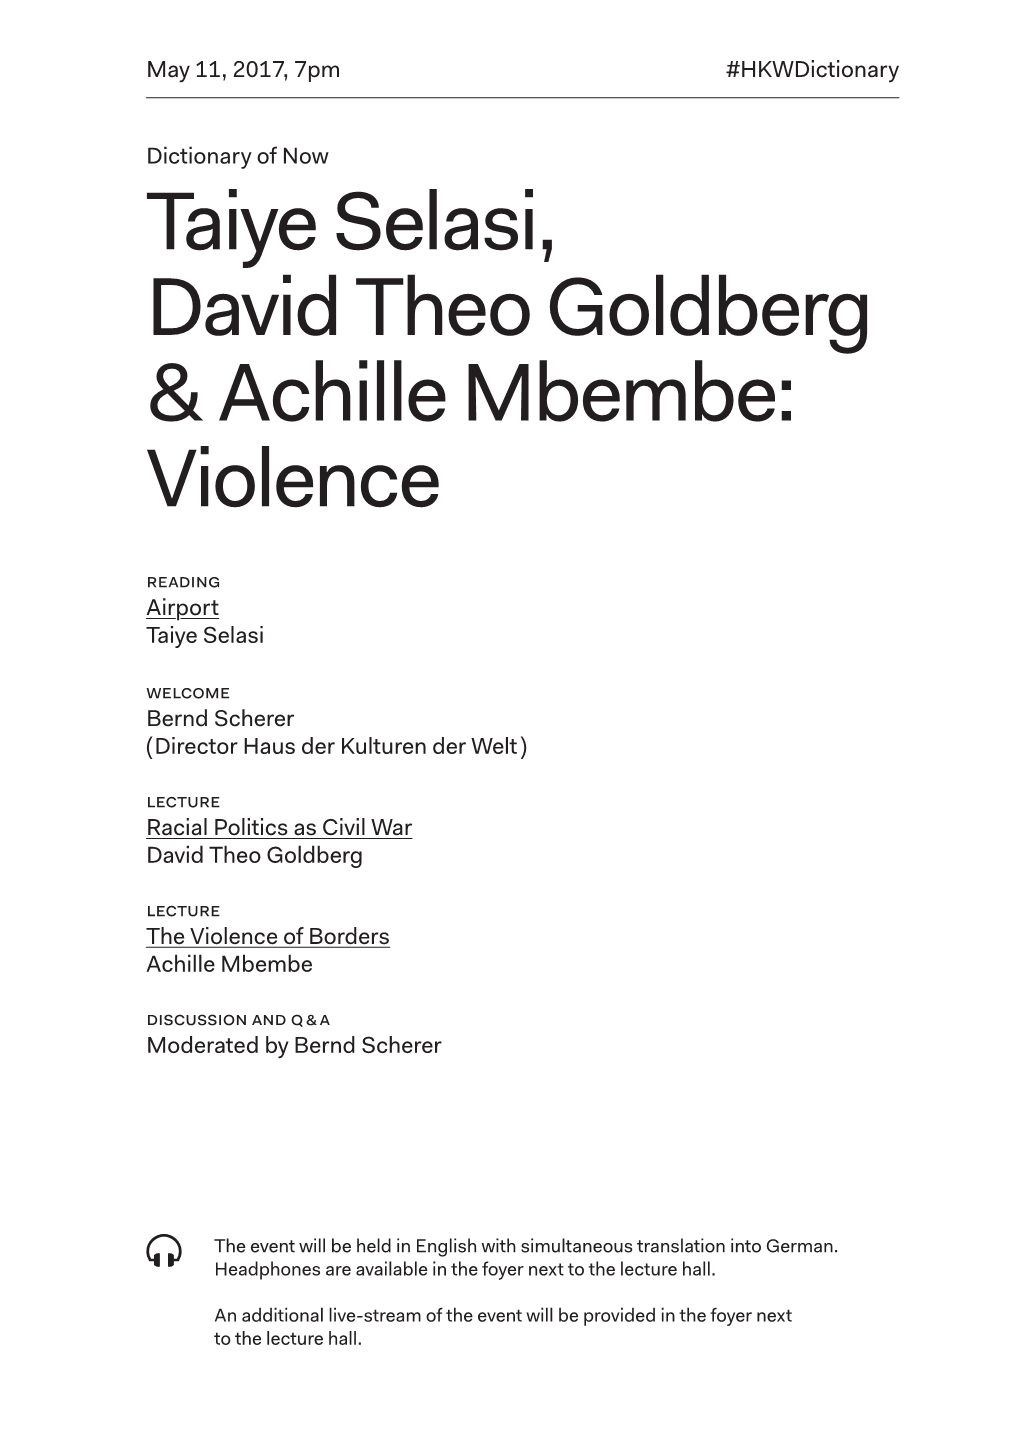 Taiye Selasi, David Theo Goldberg & Achille Mbembe